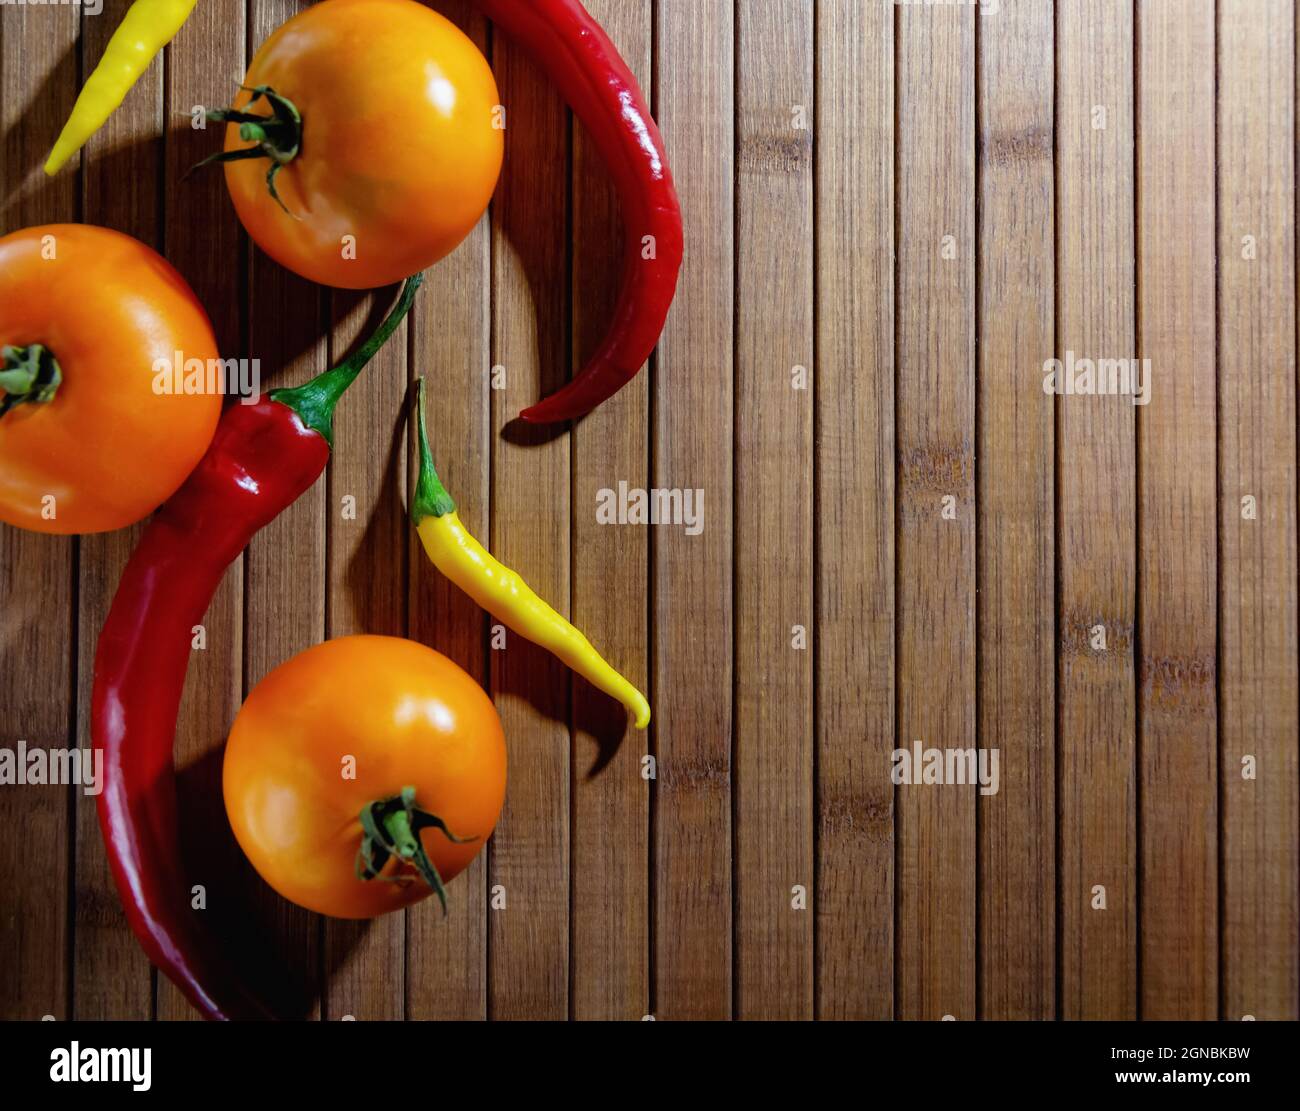 Gelbe Tomaten und rote Paprika liegen auf einem hölzernen Hintergrund, horizontales Bild. Hochwertige Fotos Stockfoto